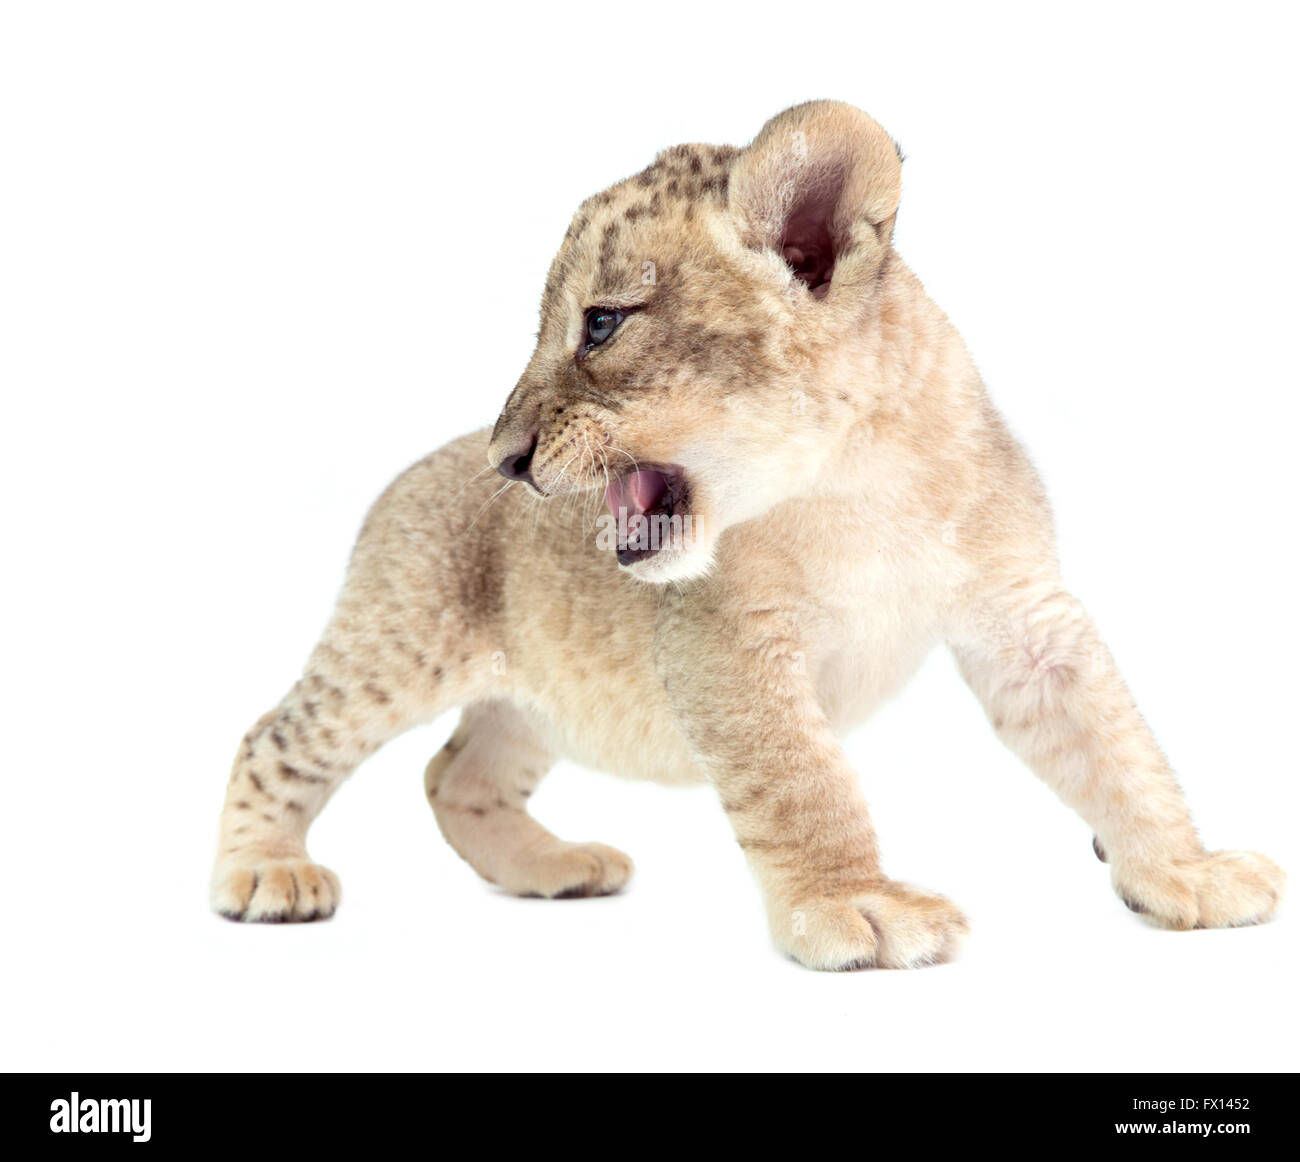 baby lion (panthera leo) isolated on white background Stock Photo